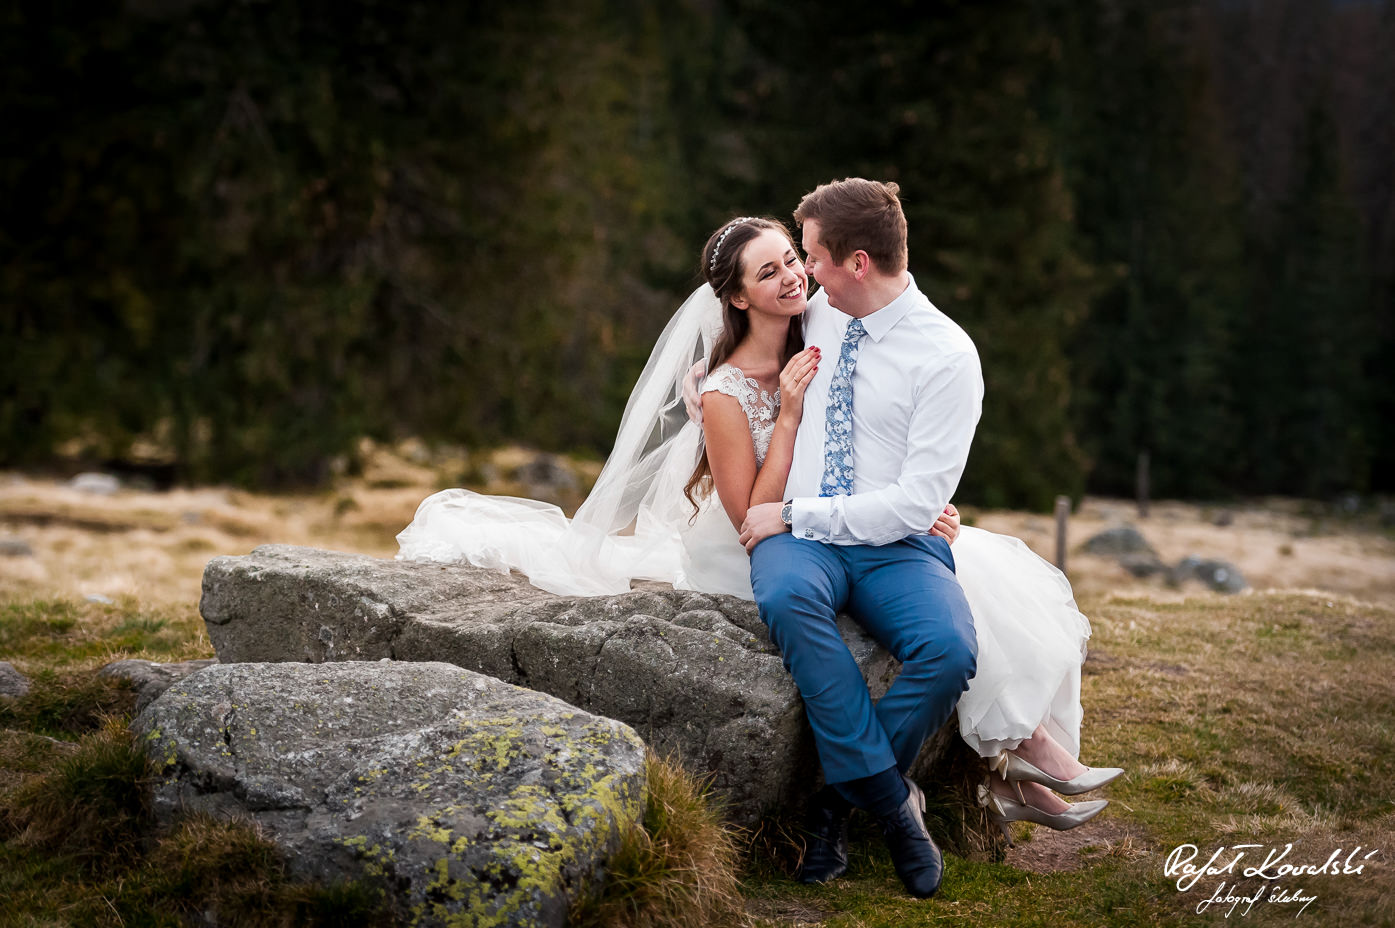 Plener ślubny w Górach - świeżo poślubieni małżonkowie pozują siedząc na wielkim kamieniu